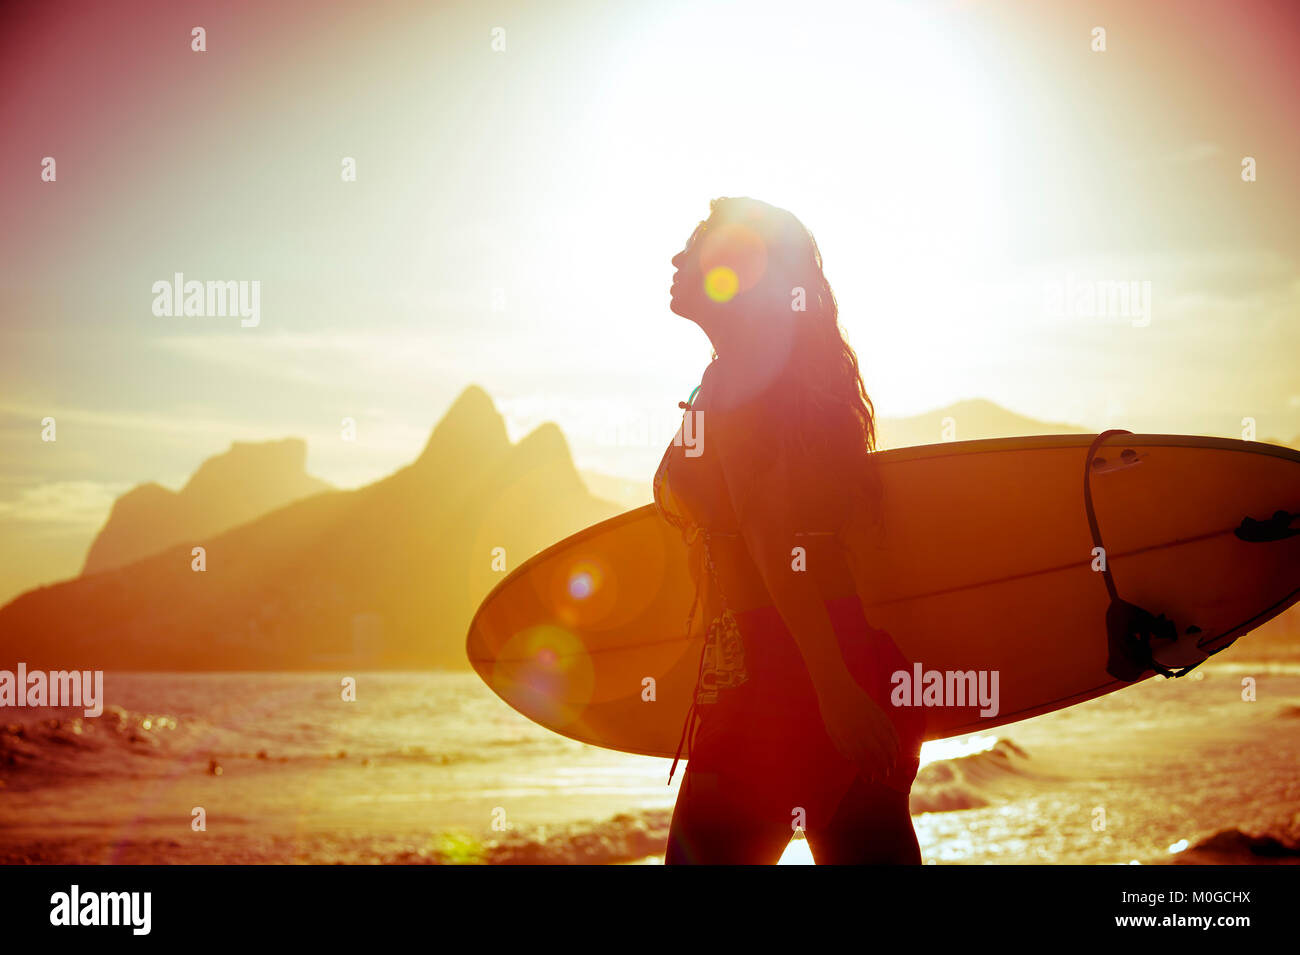 Silueta de irreconocible surfer femenina caminando con su tabla de surf en Arpoador, el popular para practicar surf en Río de Janeiro, Brasil Foto de stock